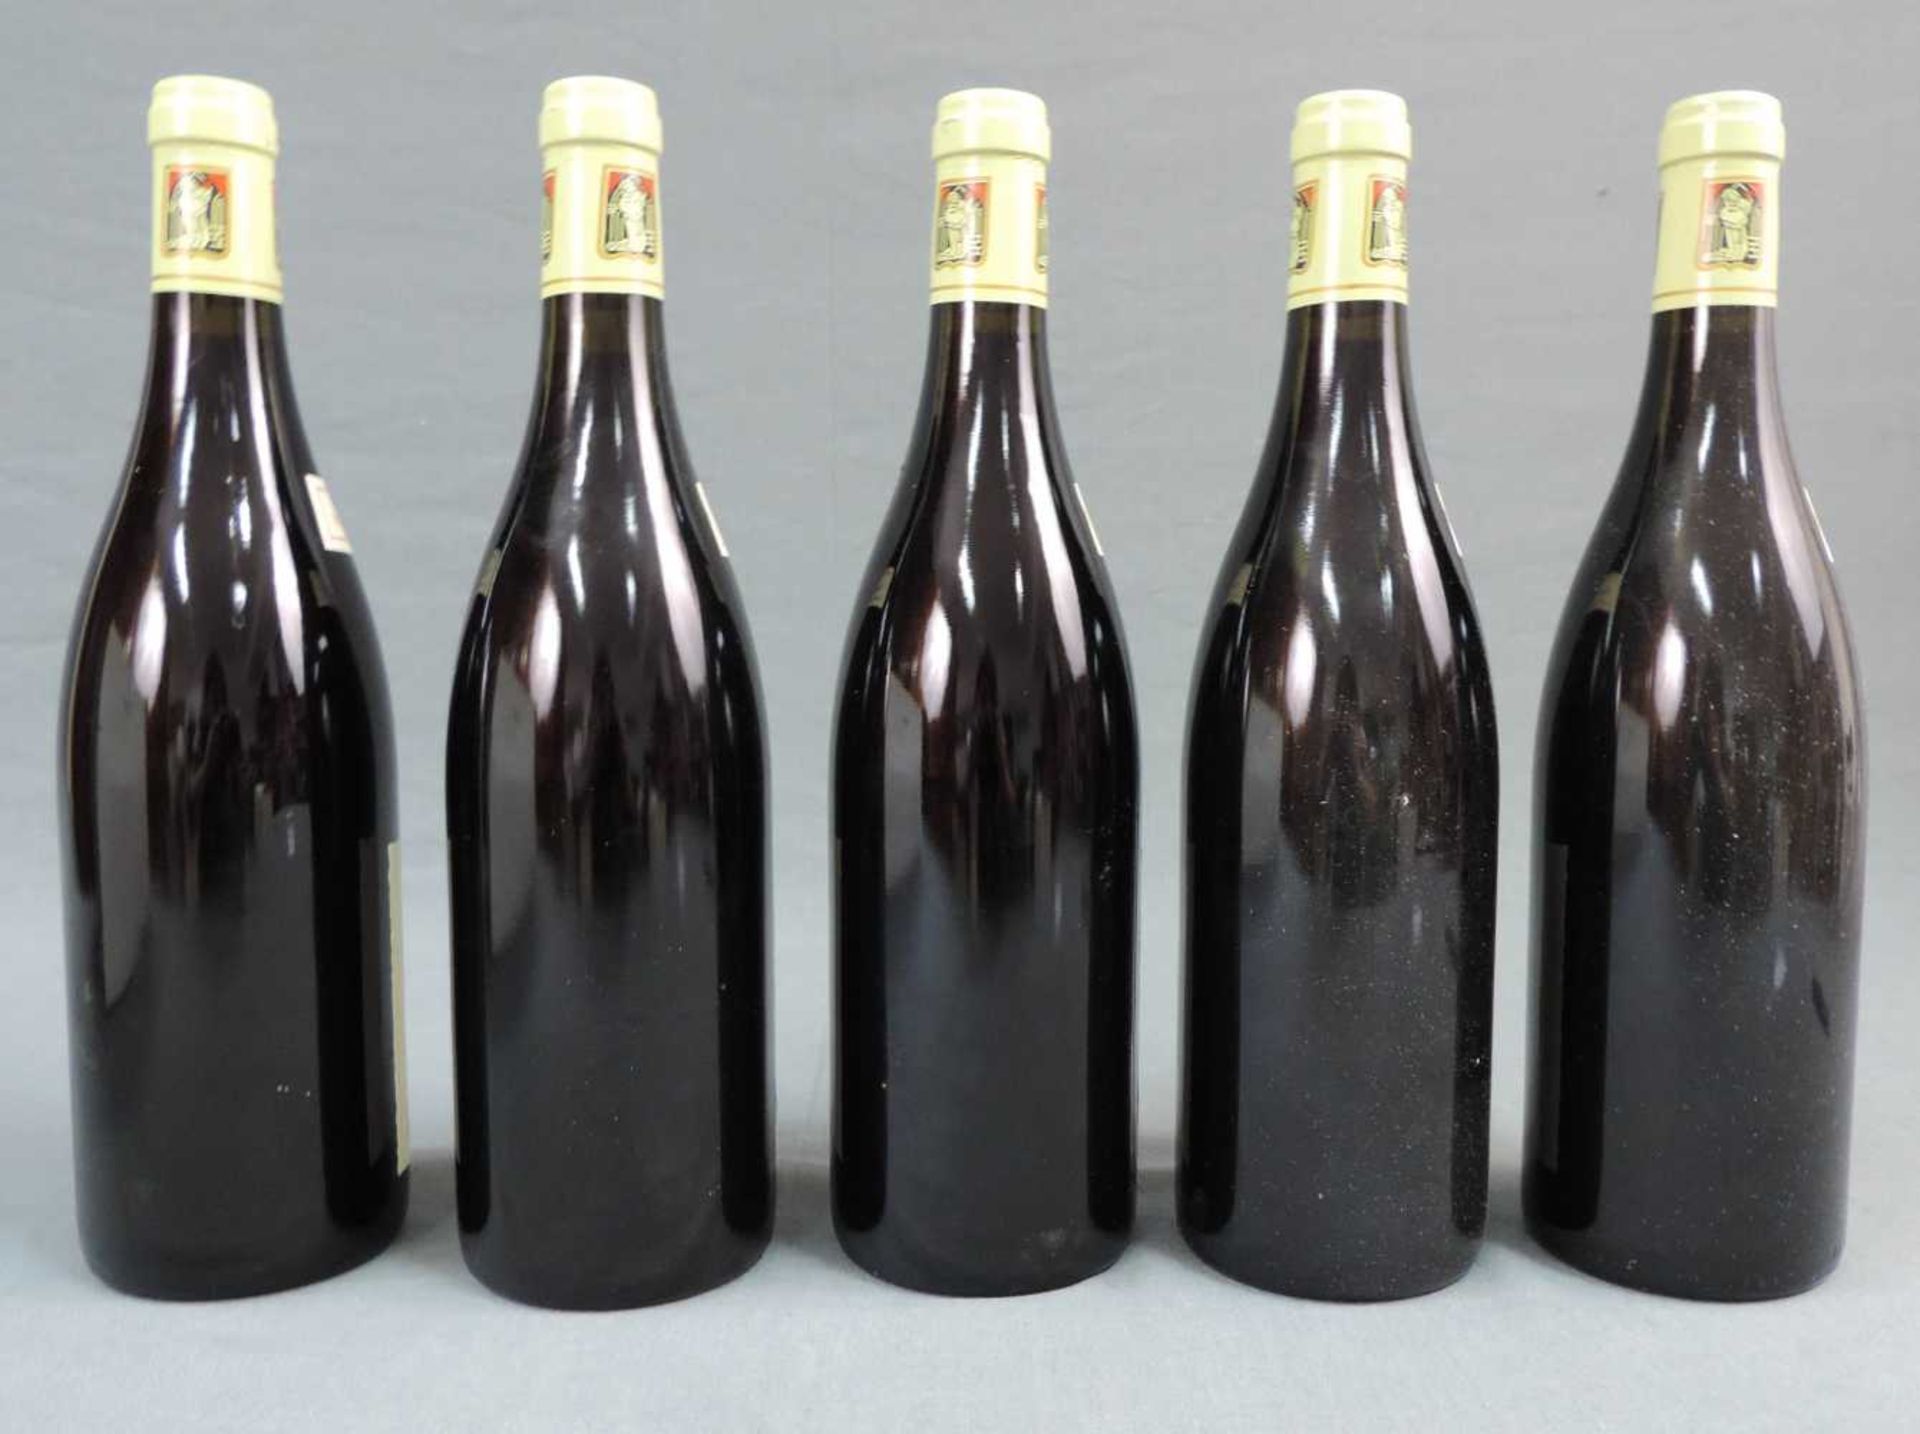 1997 Domaine Prieur - Brunet, Volnay Santenots Premier Cru, France. 5 Flaschen, 750 ml, Alc., 13, - Image 3 of 6